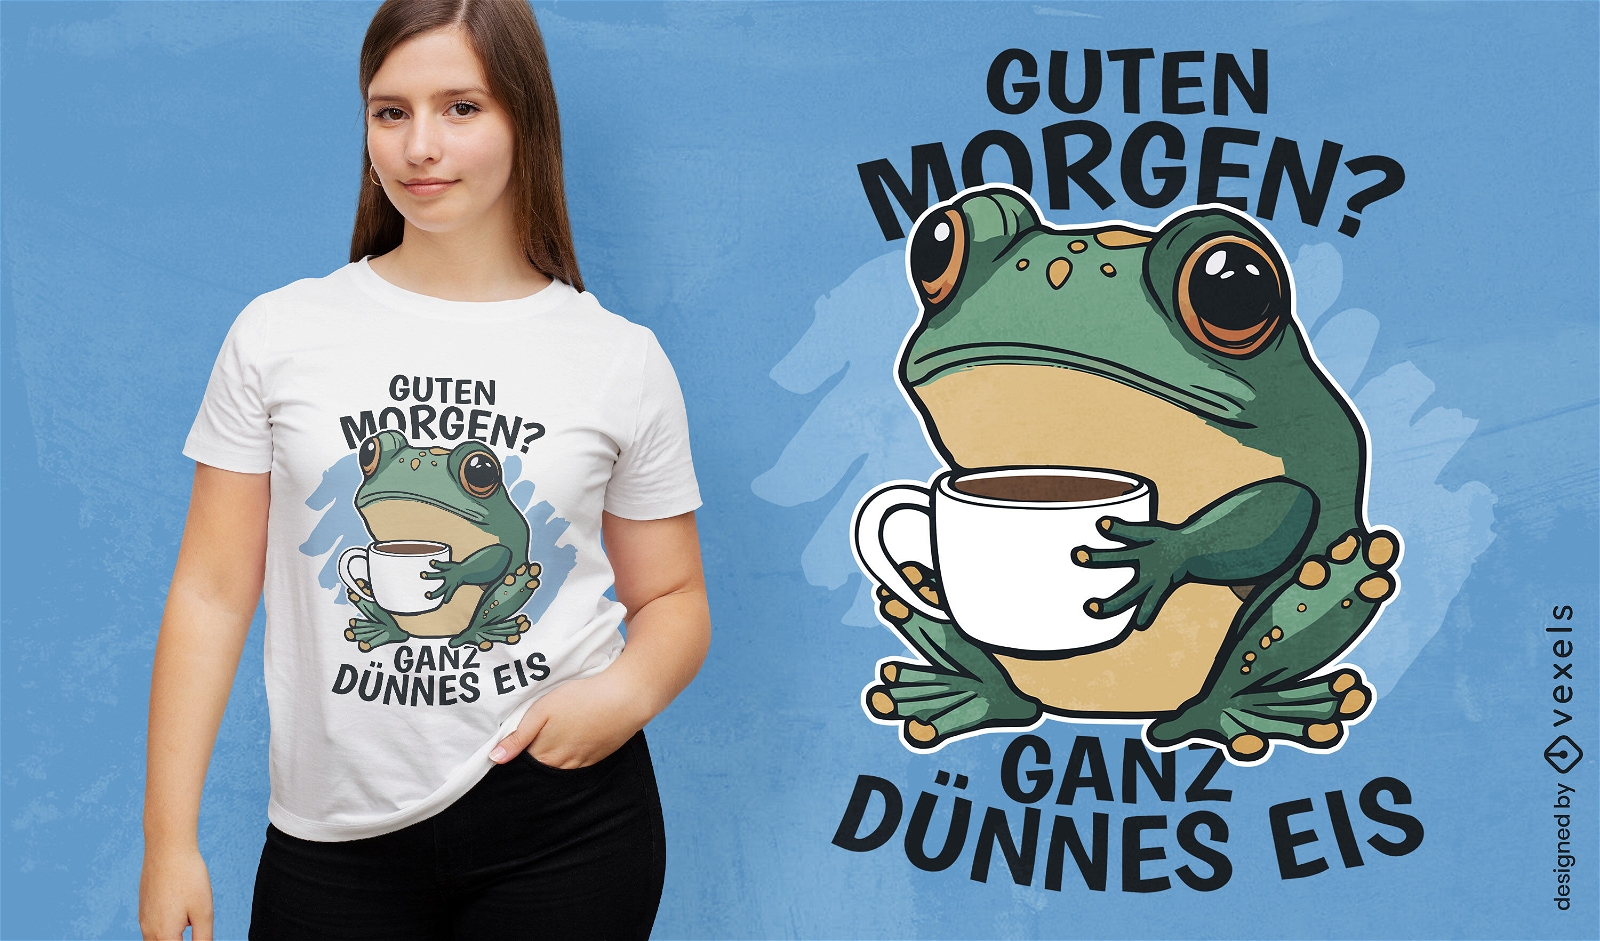 Frog gutt morgen t-shirt design